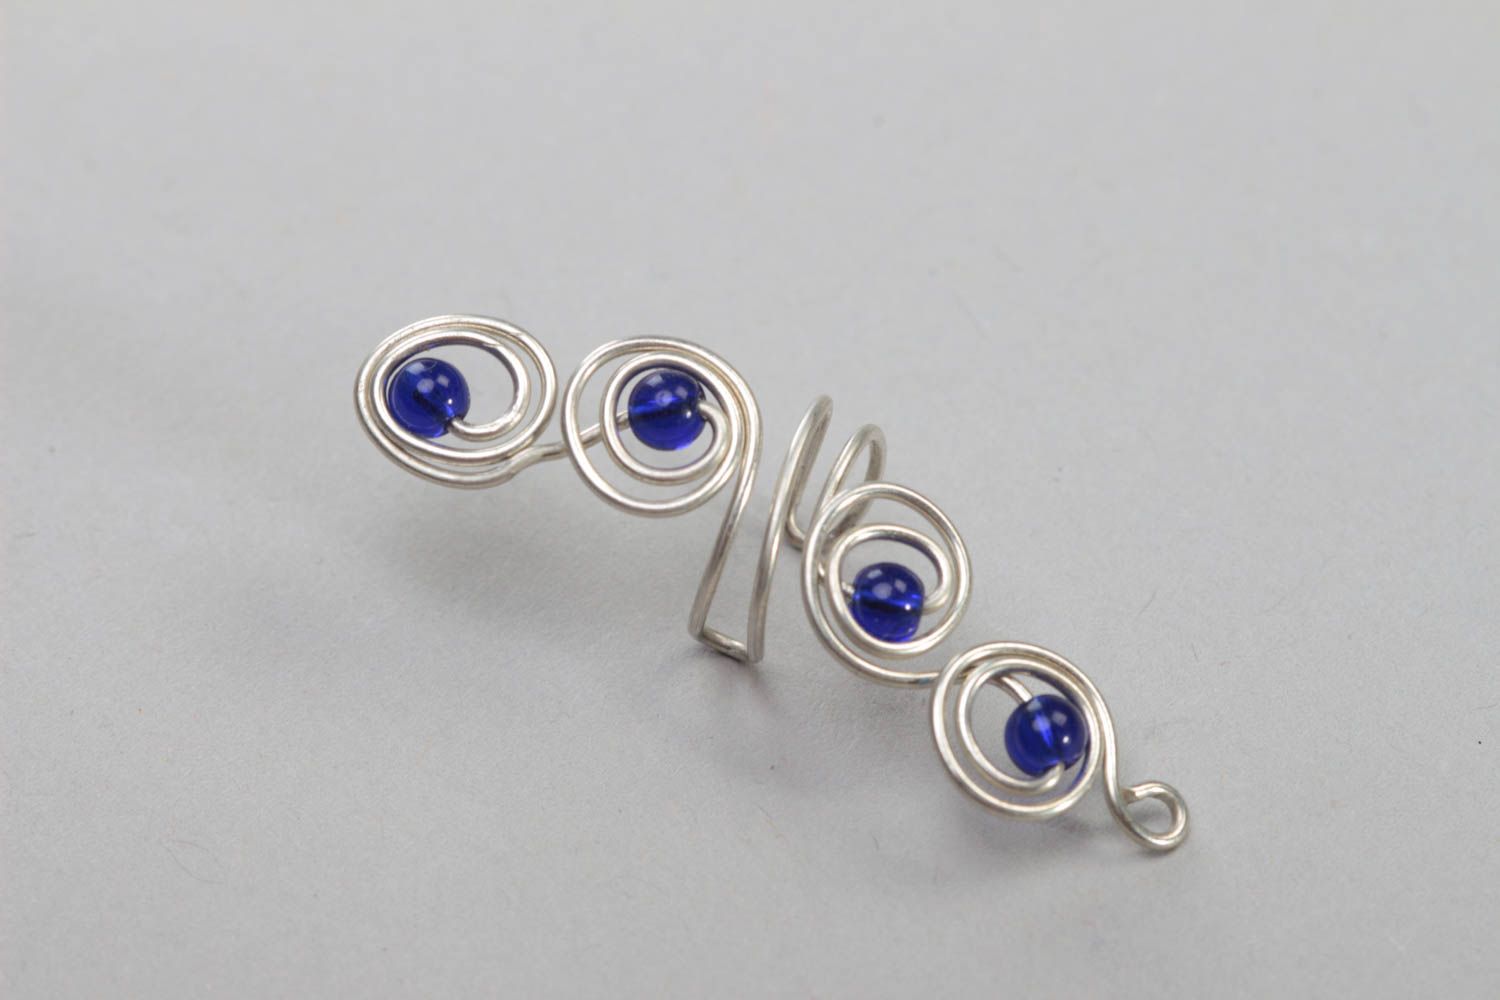 Boucle d'oreille ear cuff en métal avec perles de verre bleues faite main photo 2